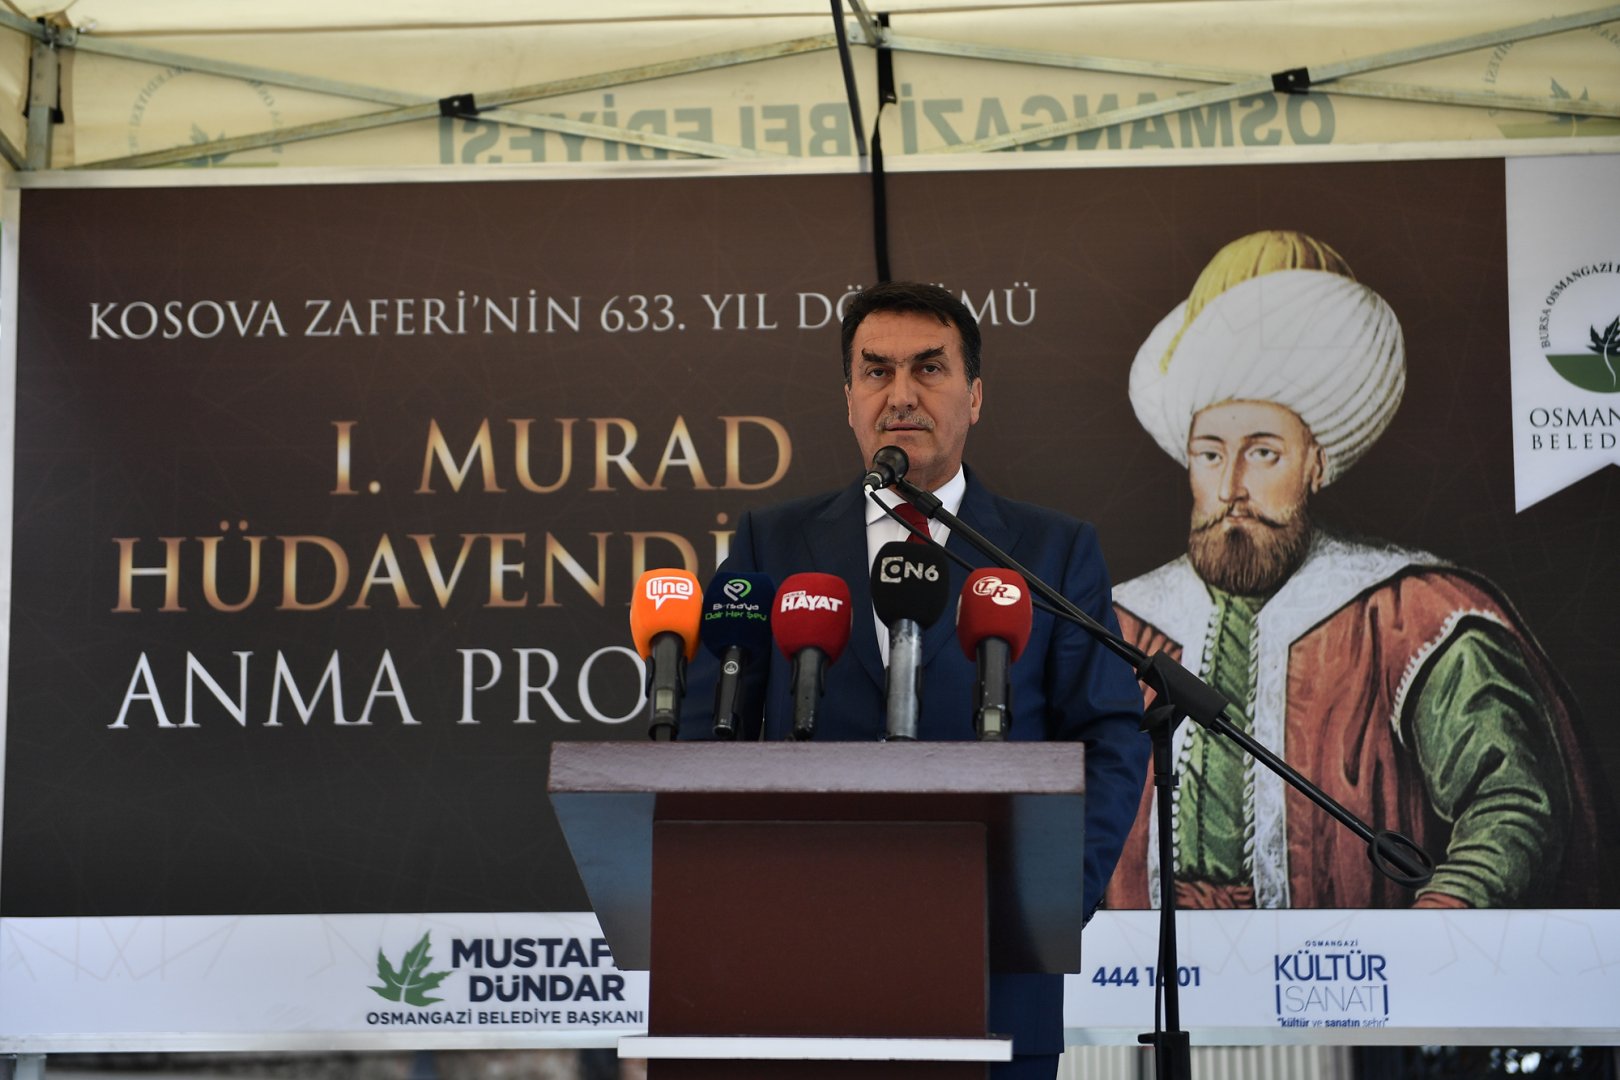 Sultan 1. Murad şehadetinin 633. yılında Bursa'da anıldı